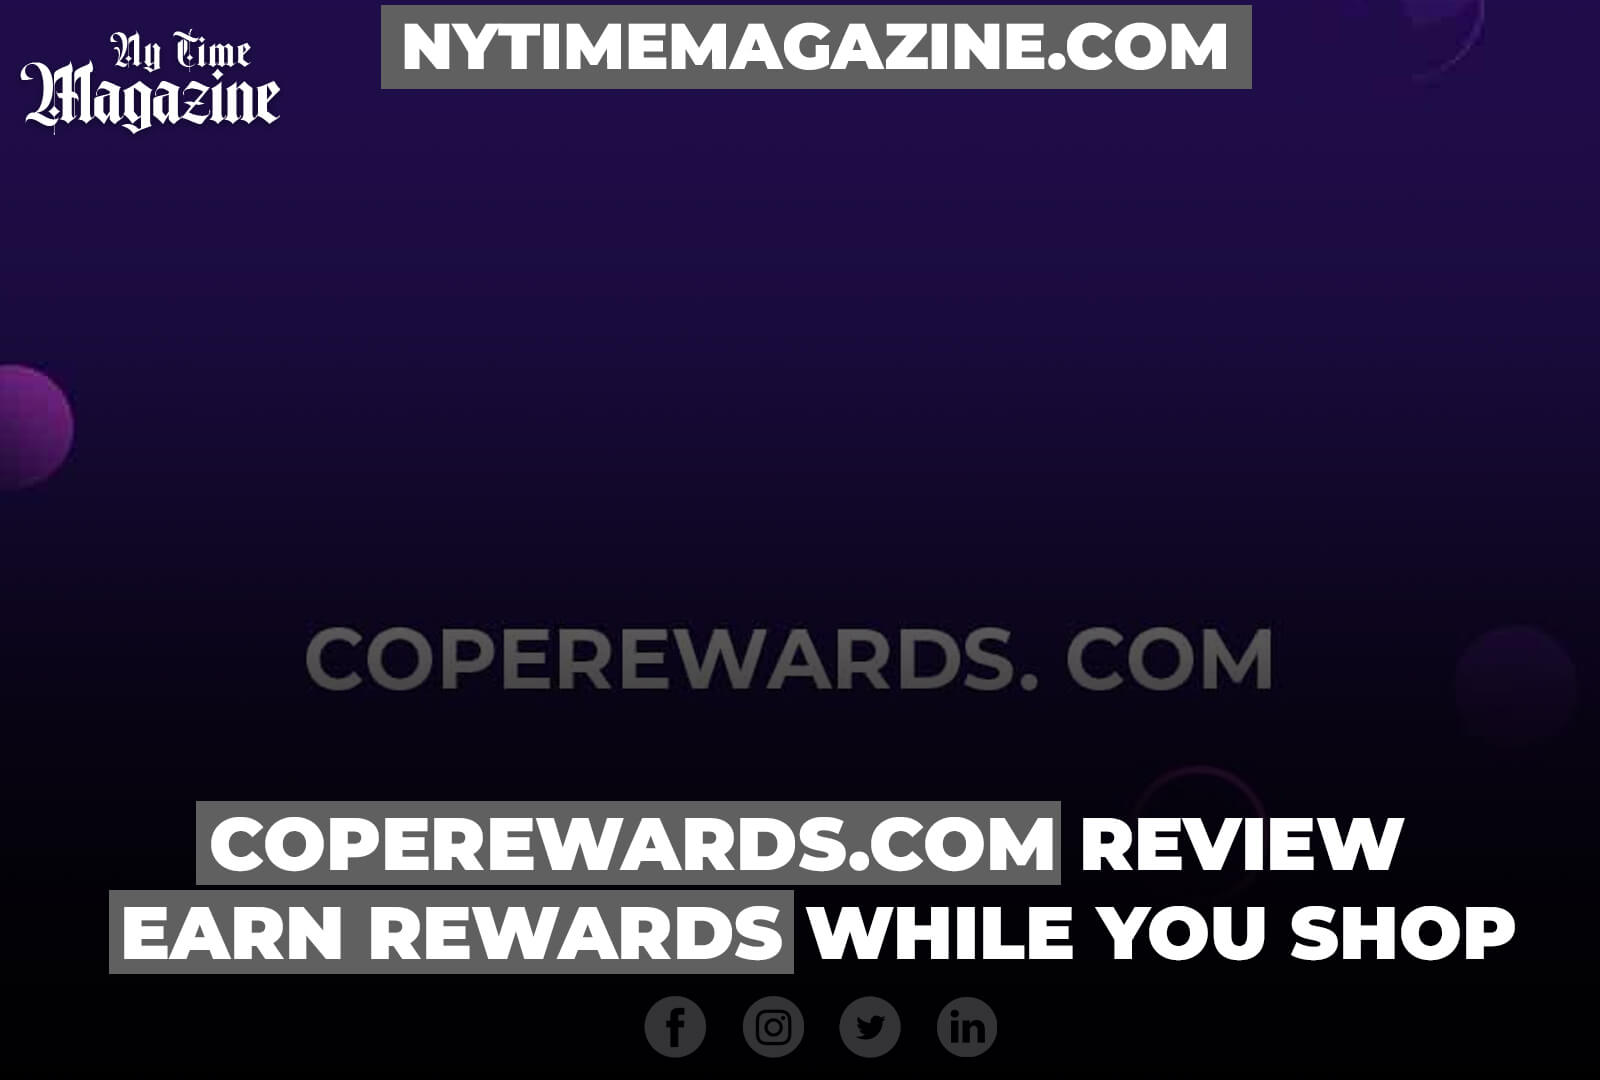 COPEREWARDS.COM REVIEW: EARN REWARDS WHILE YOU SHOP